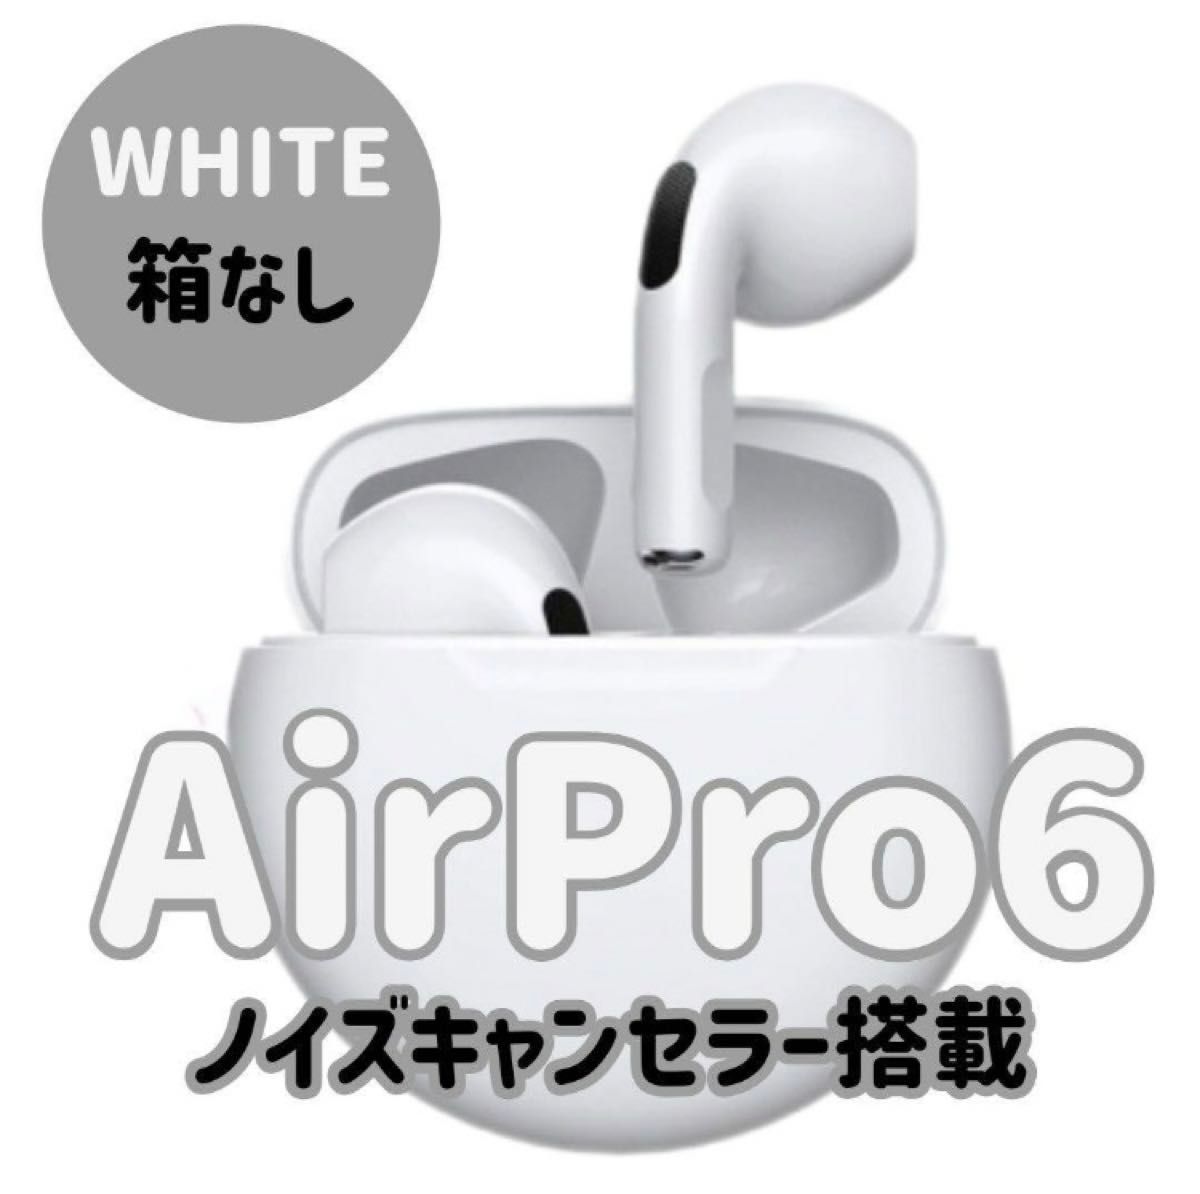 ☆最強コスパ☆最新AirPro6 Bluetoothワイヤレスイヤホン ホワイト